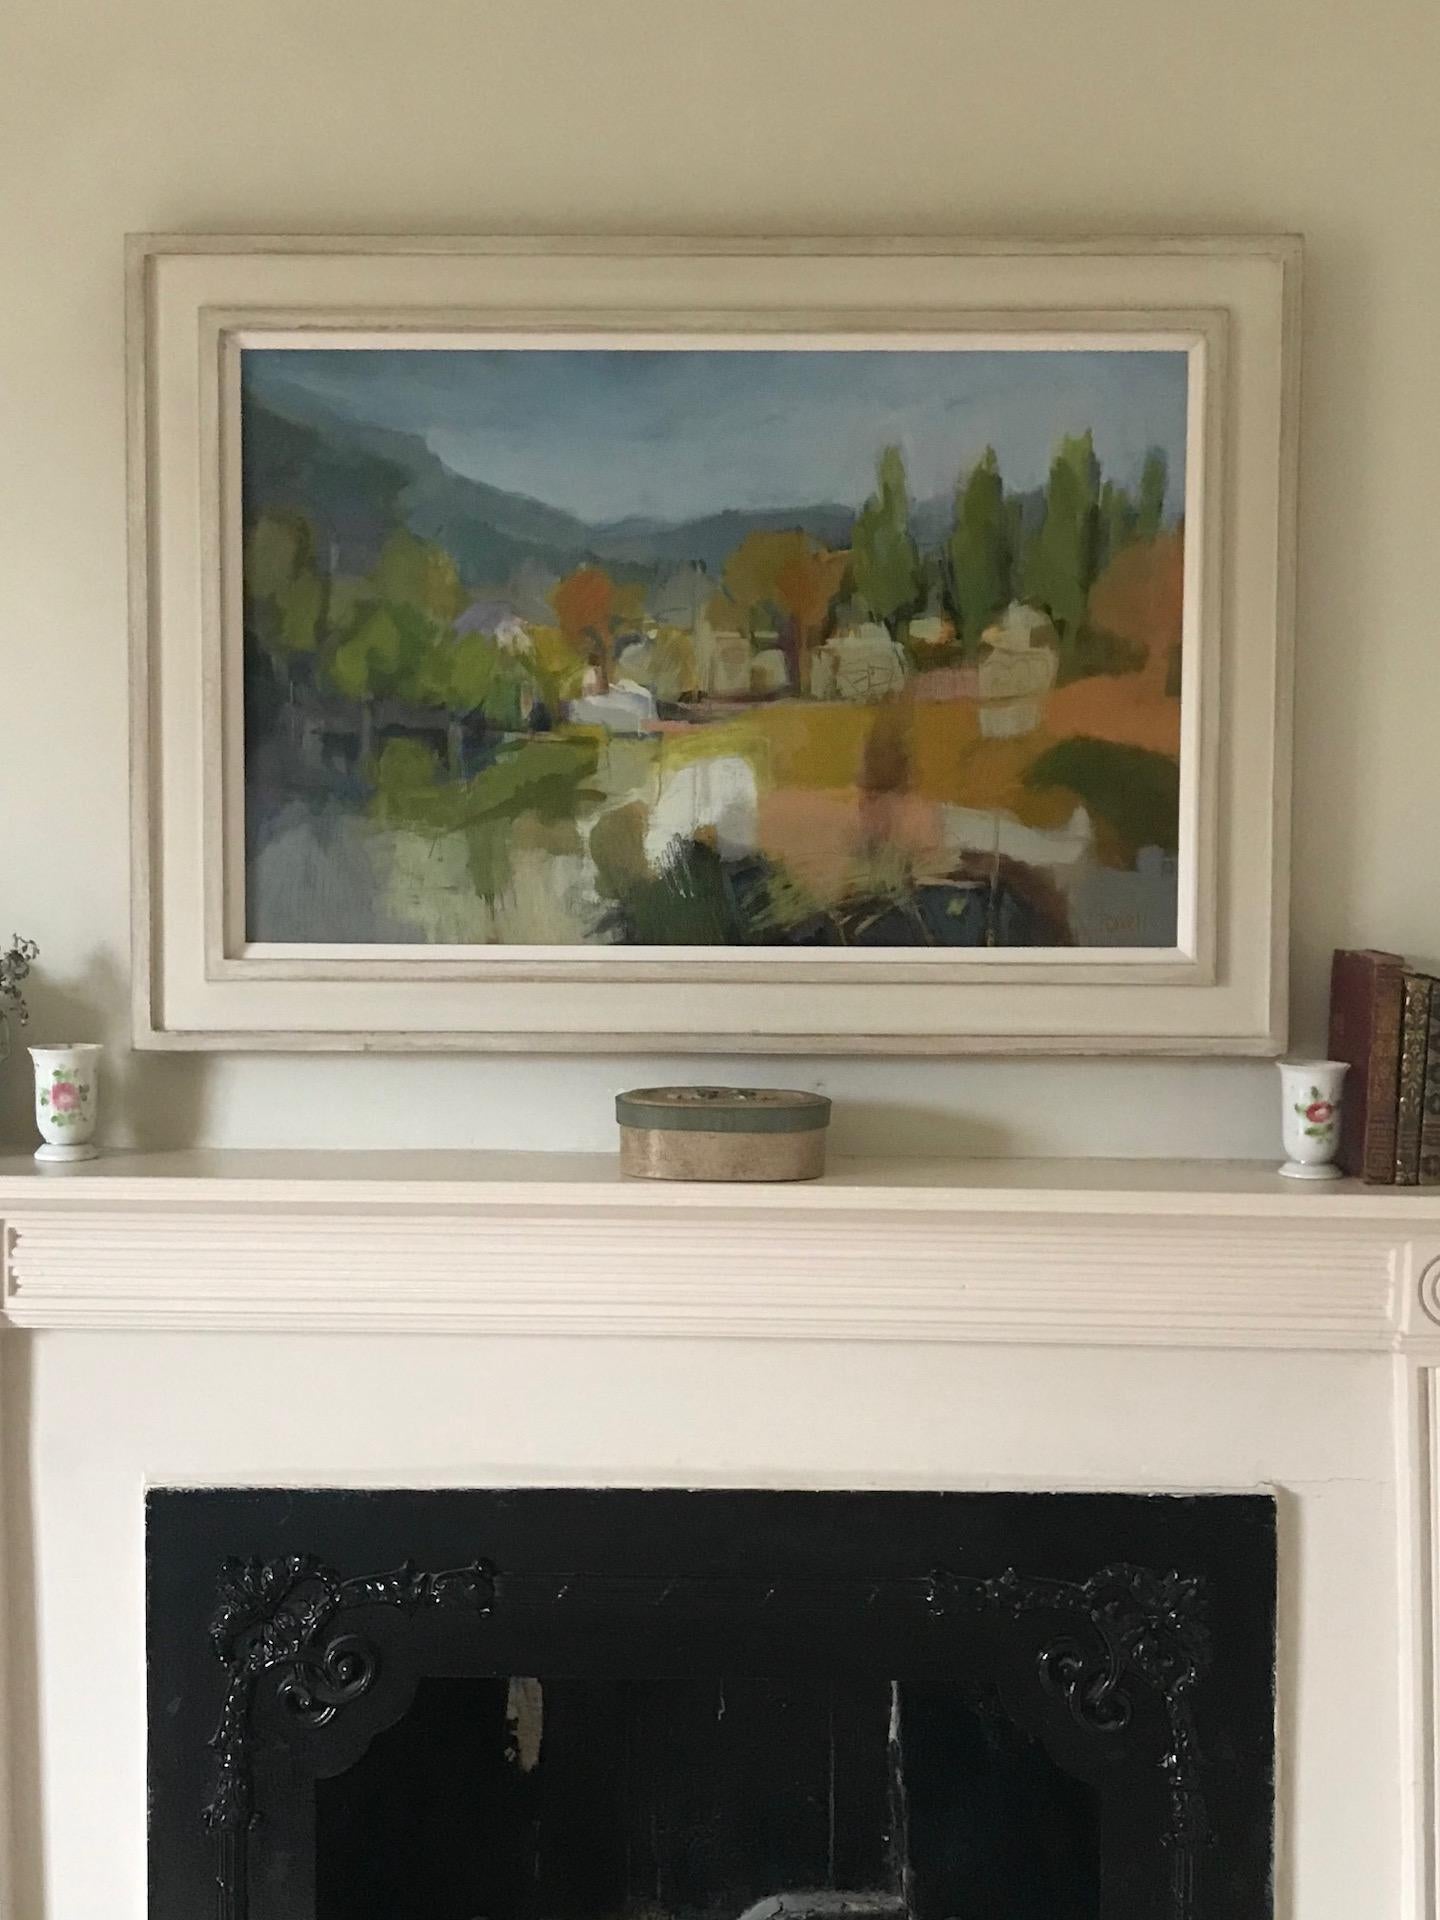 Lucy Powell
Umbrian Landscape
Original Oil Painting
Oil Paint on Canvas
Image Size: H 50.8cm x W 76.2cm
Framed Size: H 60.3cm x W 85.7cm x D 4cm
Framed in a White Wood Effect Frame

Umbrian Landscape is an original painting by Lucy Powell. The